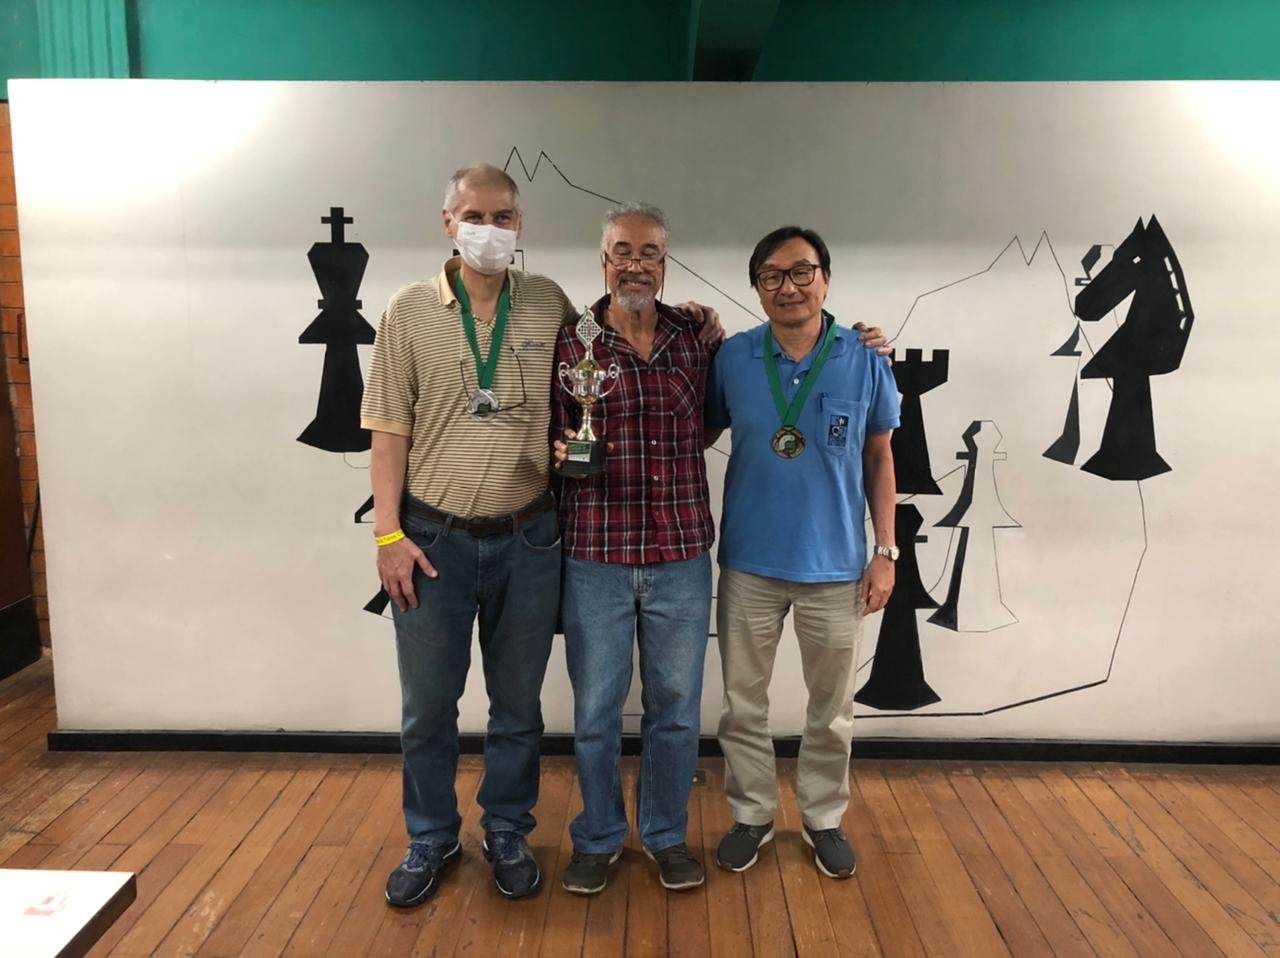 27/11/2022 – Torneio São Gonçalo Chess 2022 (São Gonçalo do Rio Abaixo/MG)  – FMX